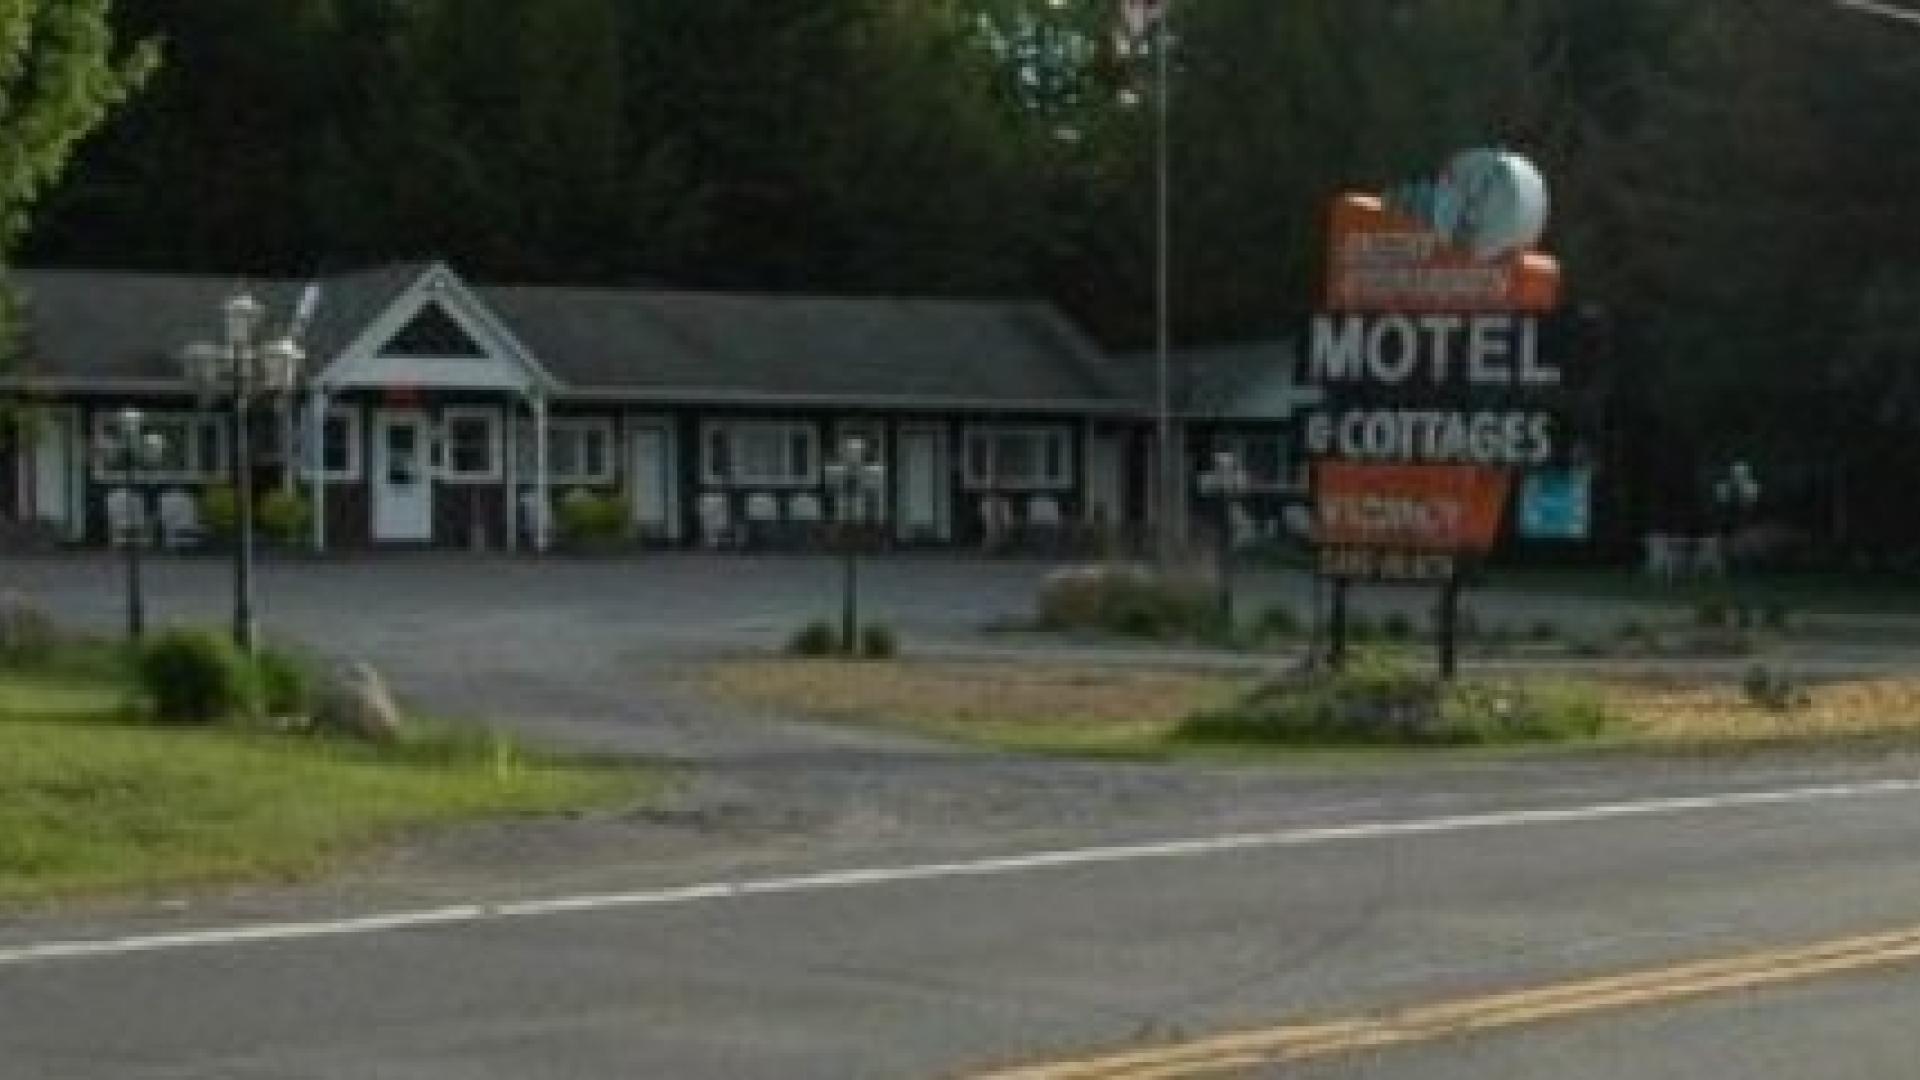 Deer Meadows Motel & Cottages